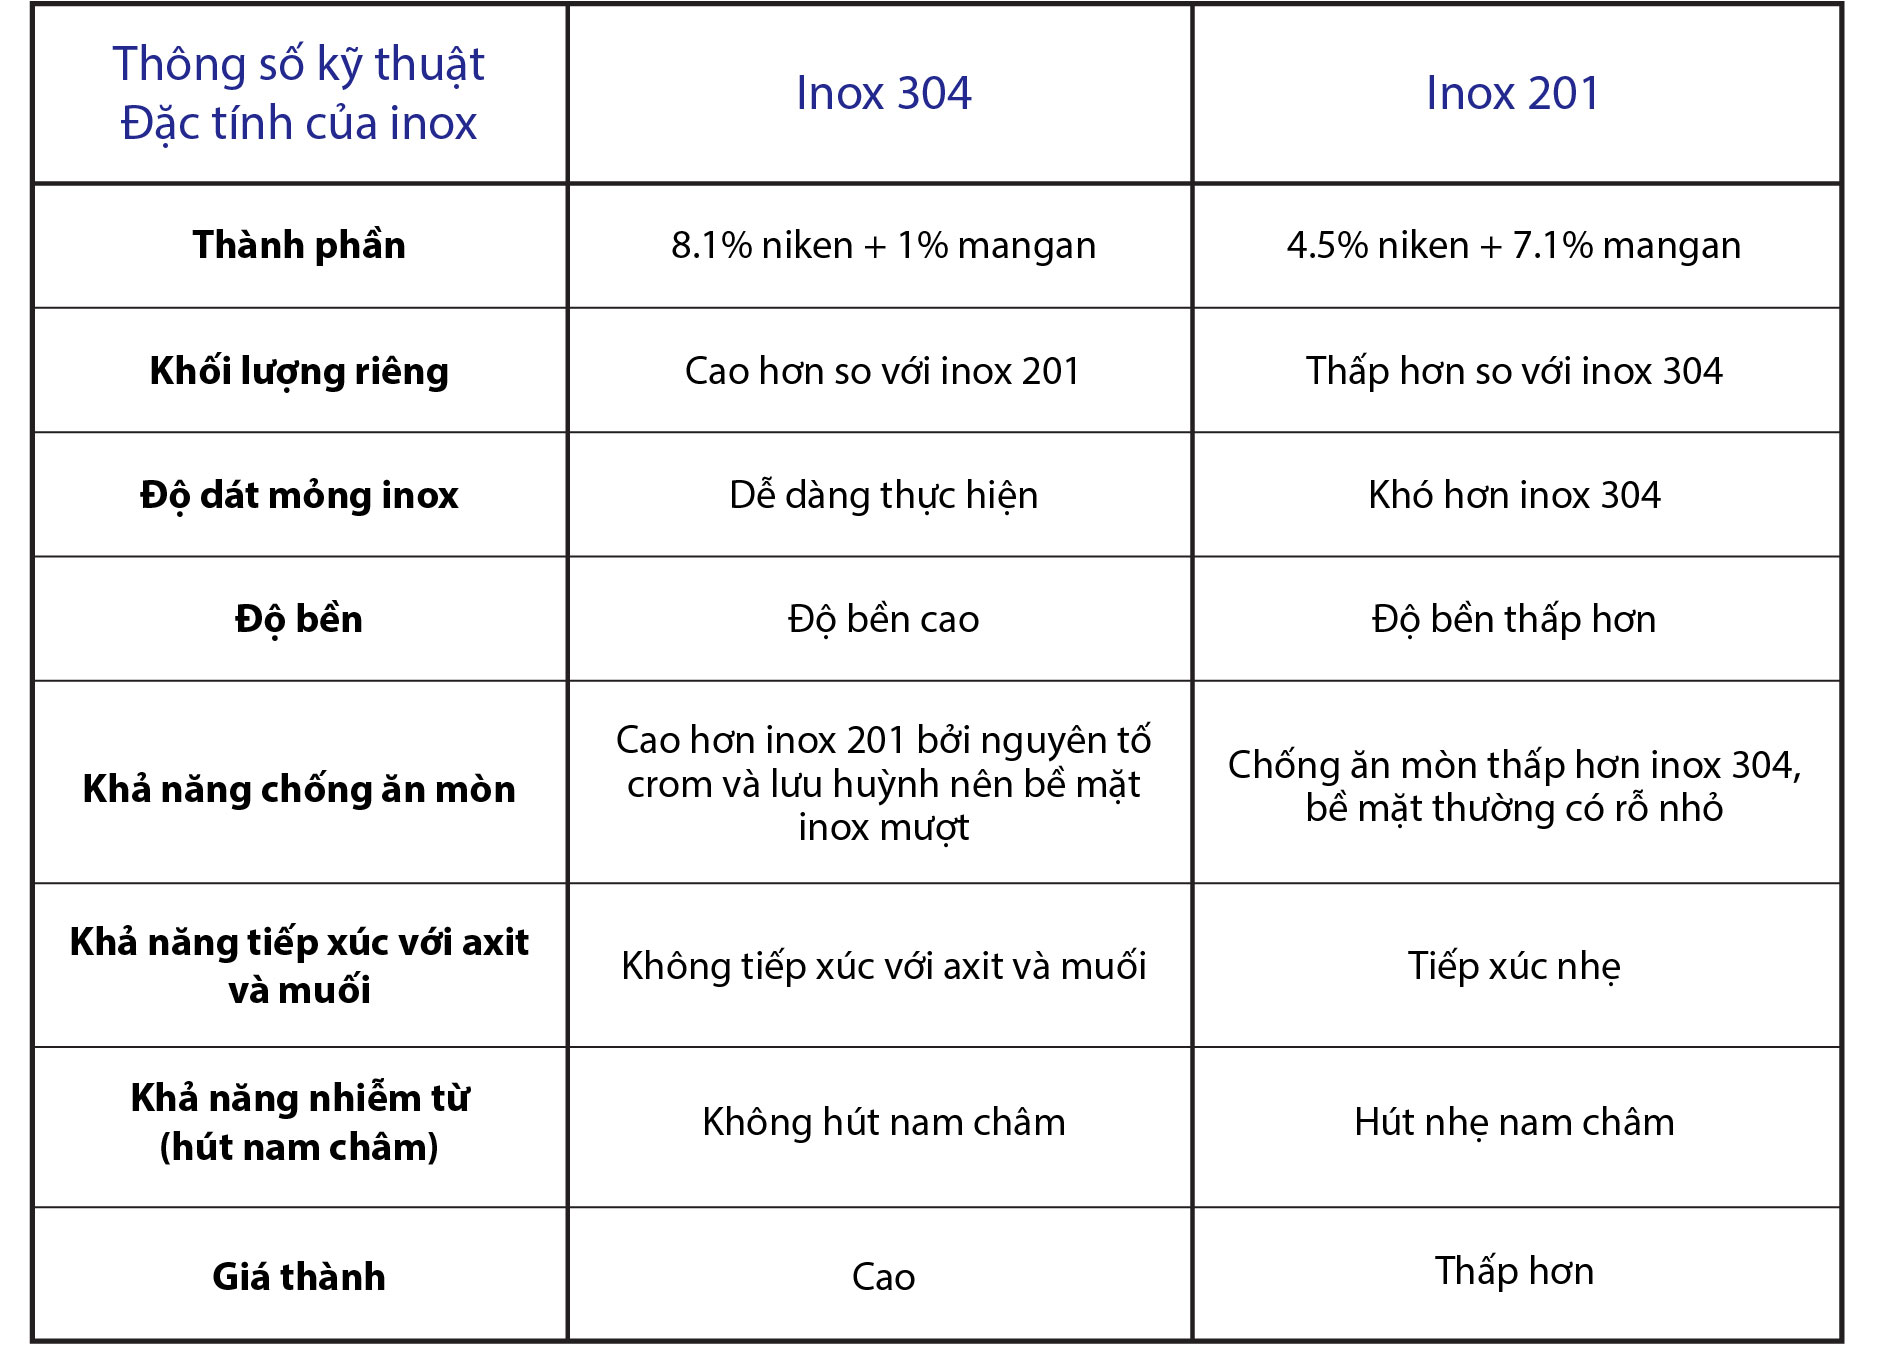 So sánh những ưu điểm và nhược điểm của Nồi điện nấu cháo inox 304 so với Nồi nấu cháo điện sản xuất inox 201.